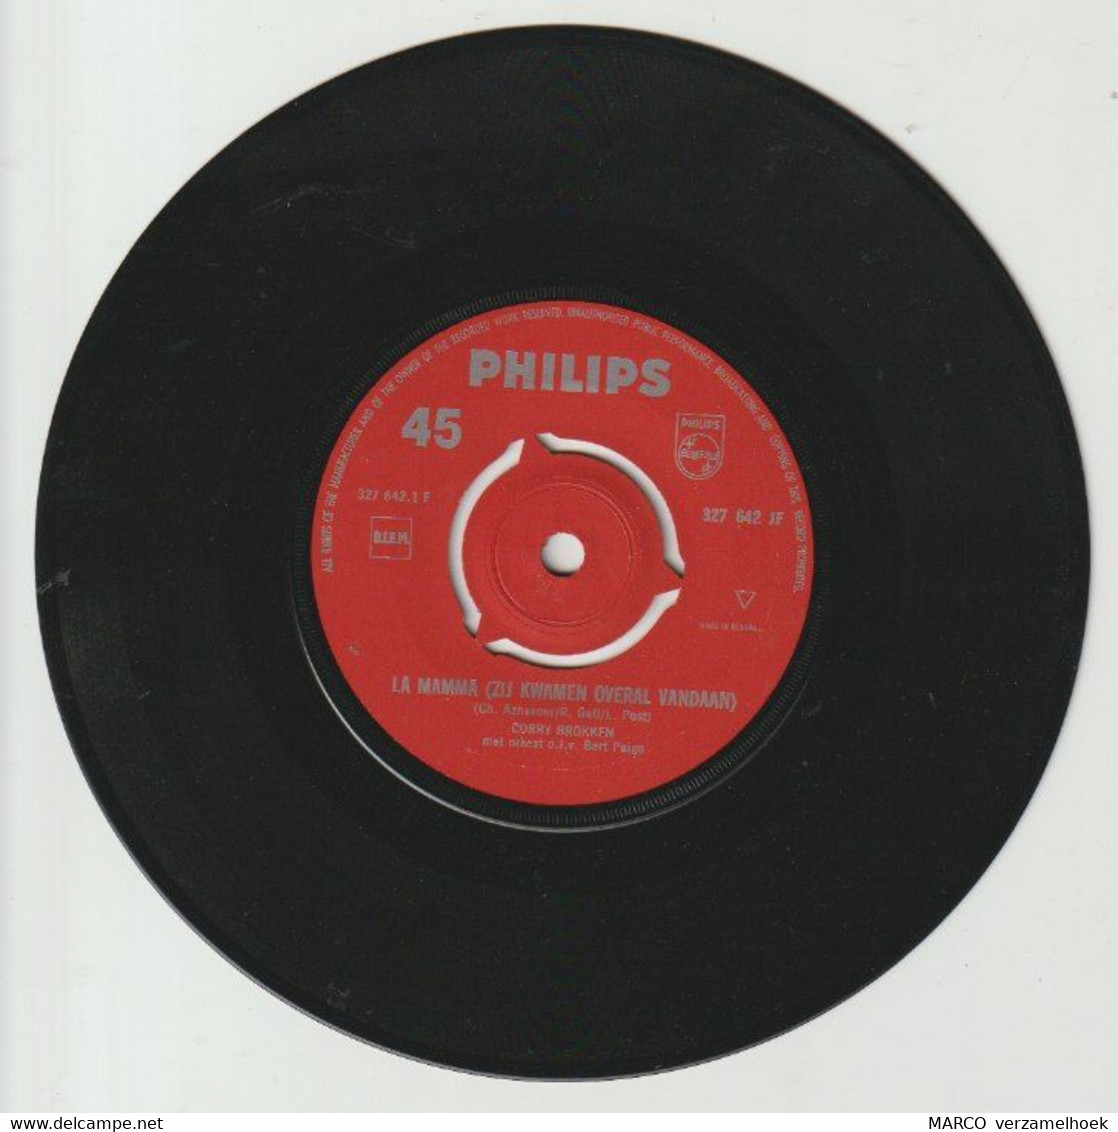 45T Single Favorieten Expres Corry Brokken - La Mamma 1964 PHILIPS 327 642 - Andere - Nederlandstalig